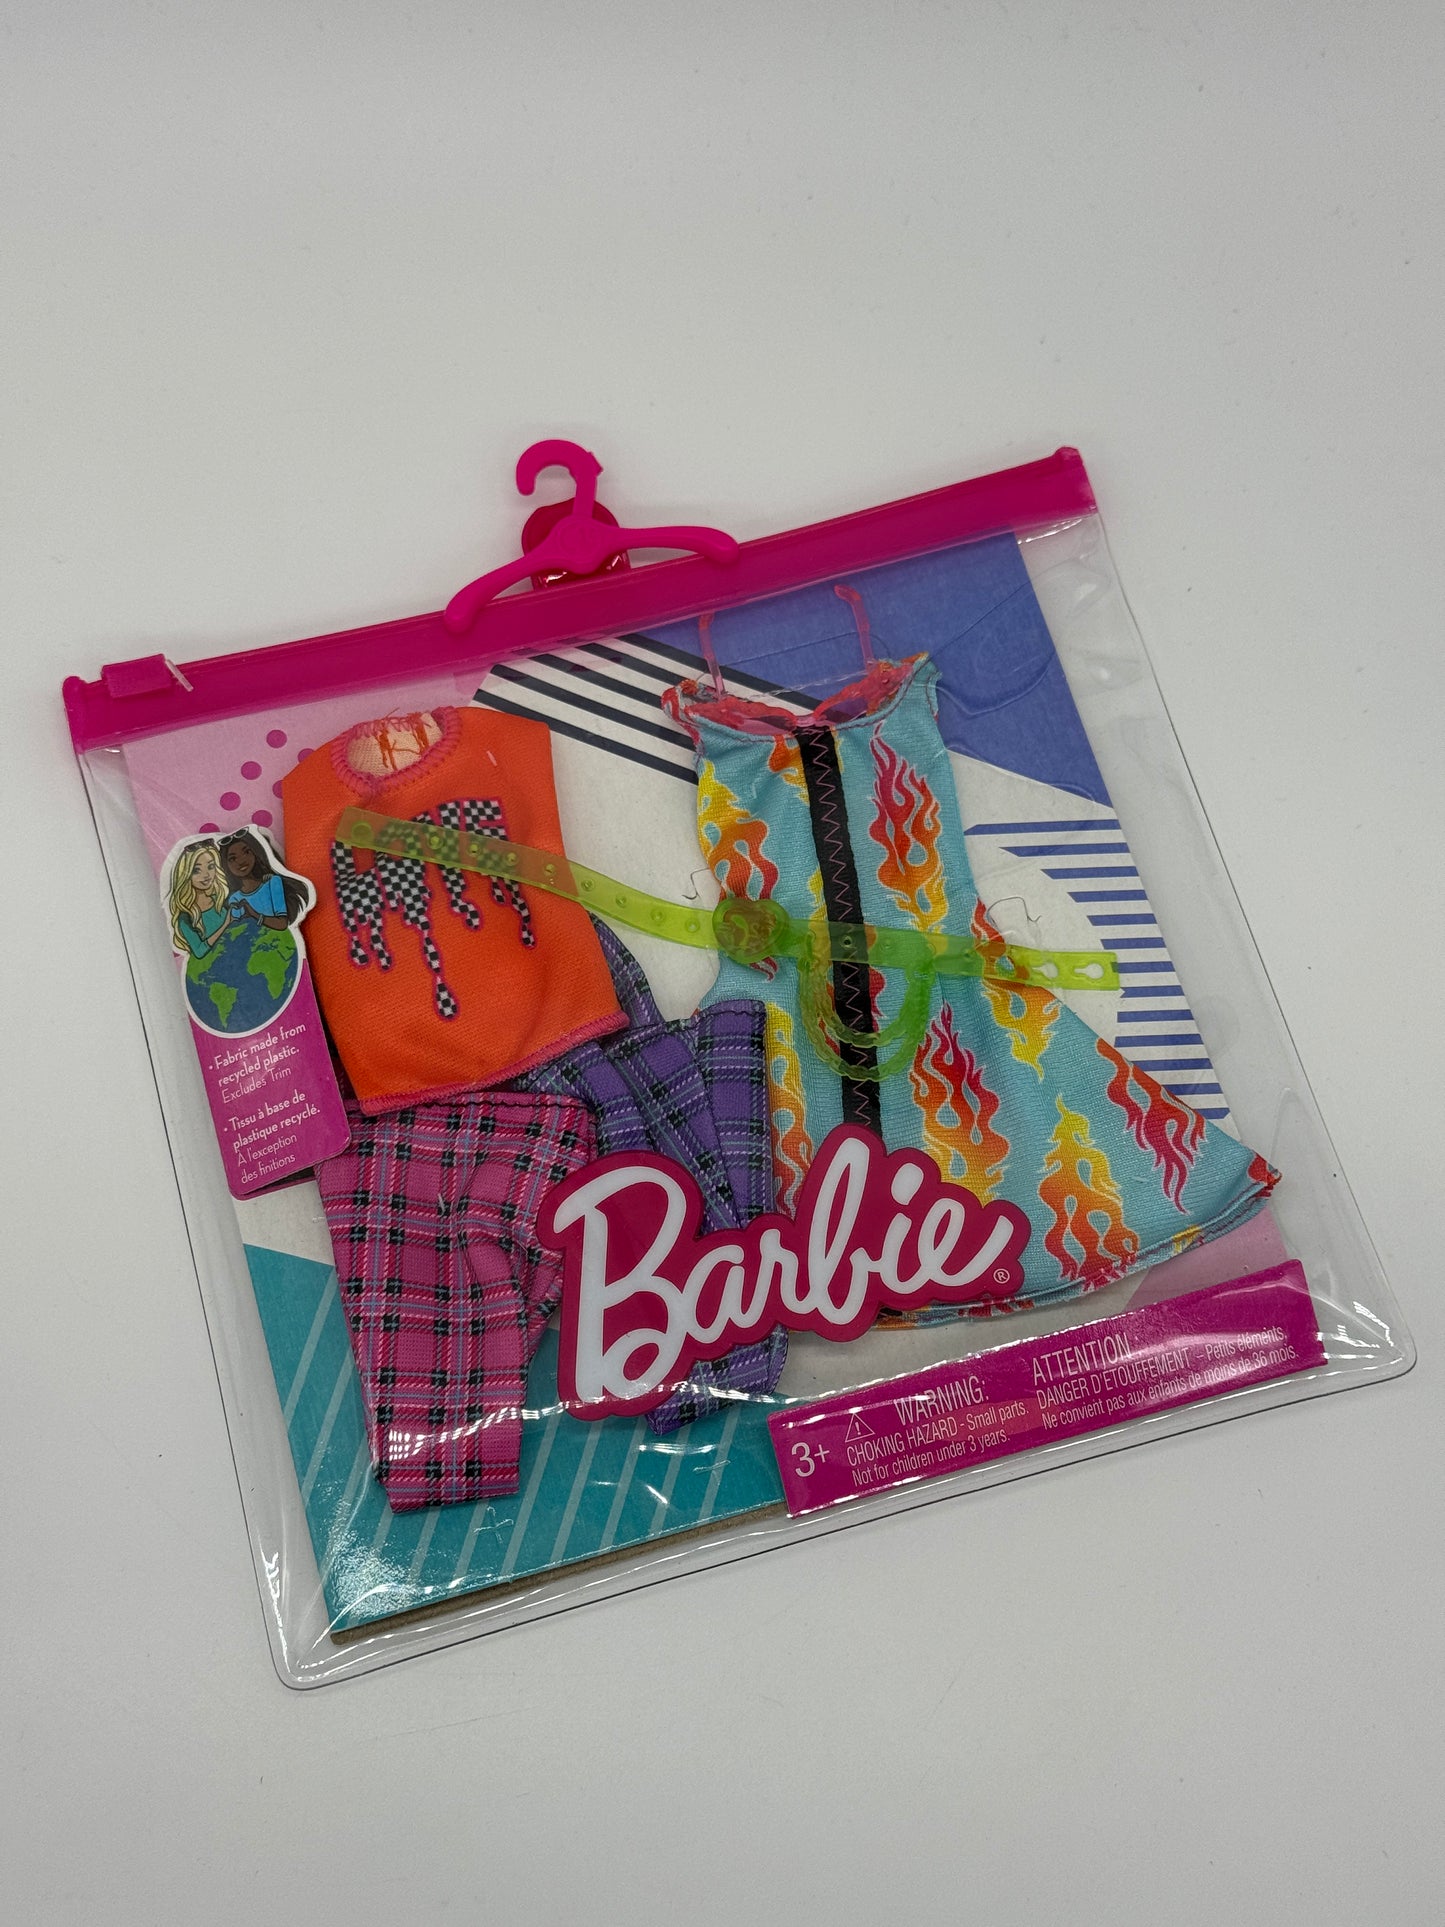 Barbie Fashions Zubehör "Rock'n Roll" Big Pack mit Zubehör (Mattel)